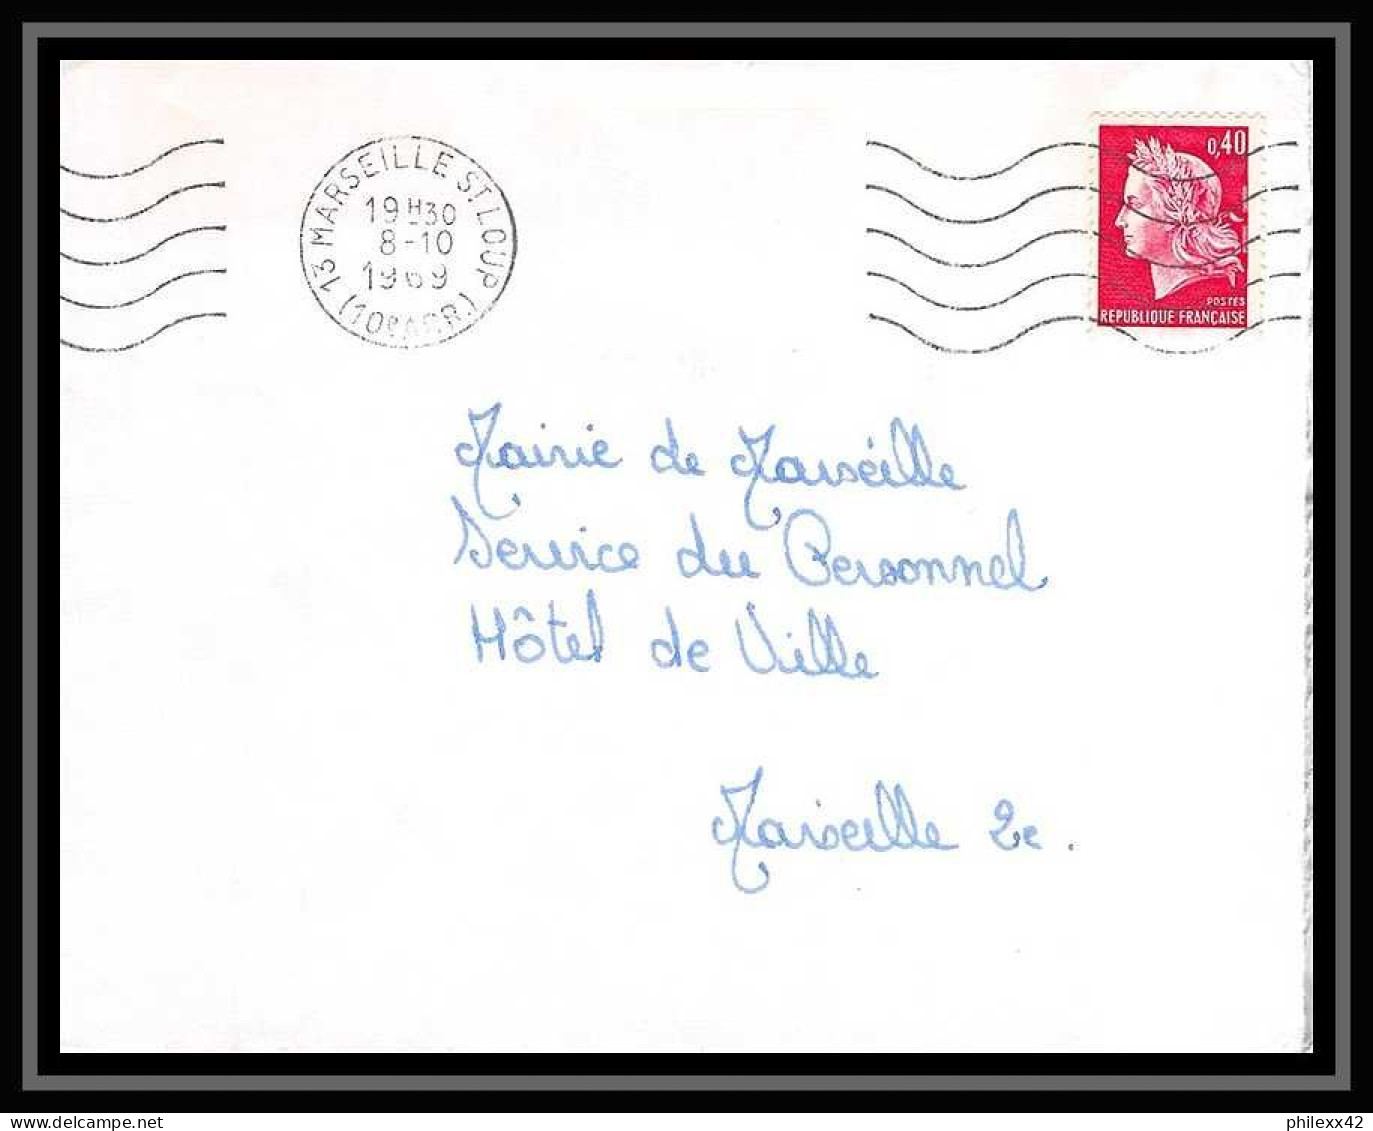 107531 lot de 10 Lettres cover Bouches du rhone Carte postale (postcard) recommandé...Marseille Saint loup